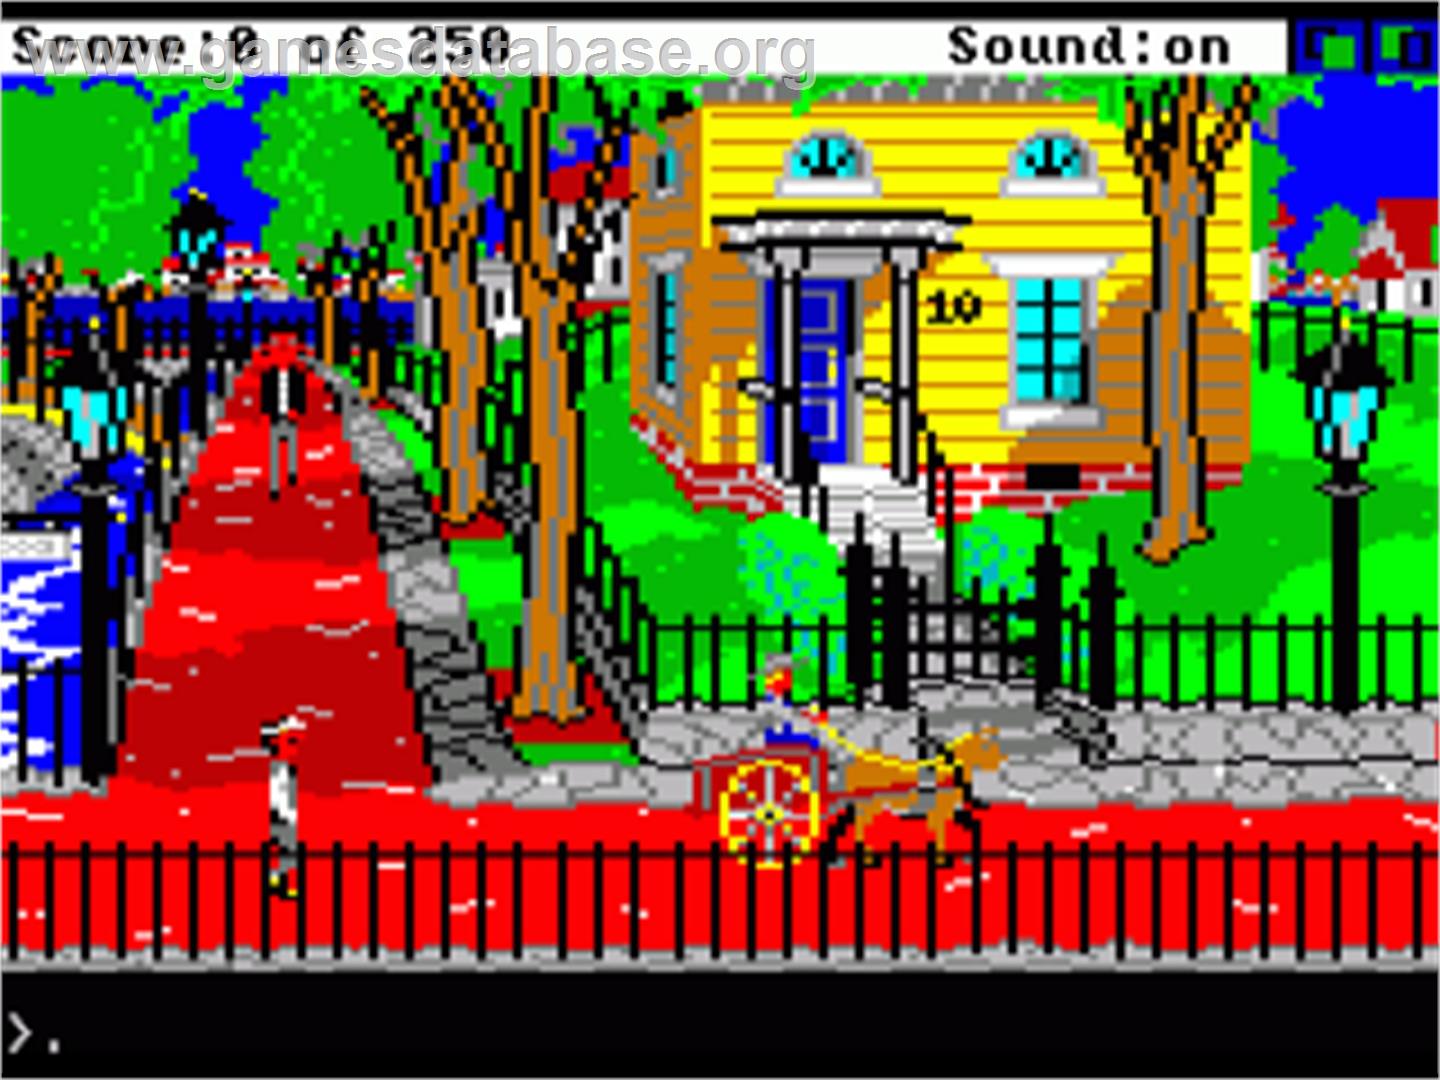 Gold Rush - Commodore Amiga - Artwork - In Game